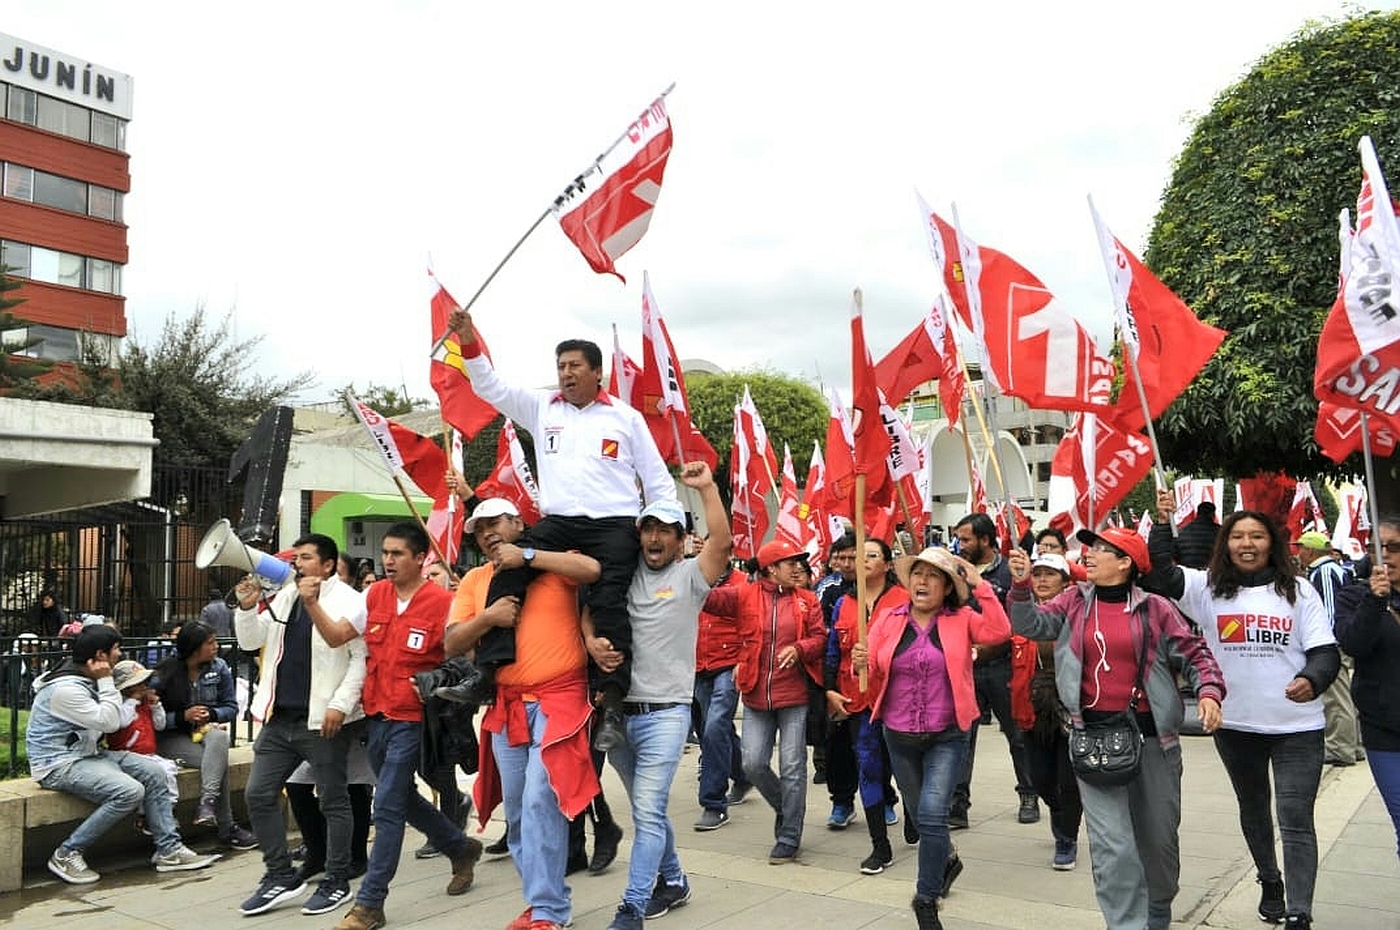 Rebelión en Perú Libre contra Pedro Castillo